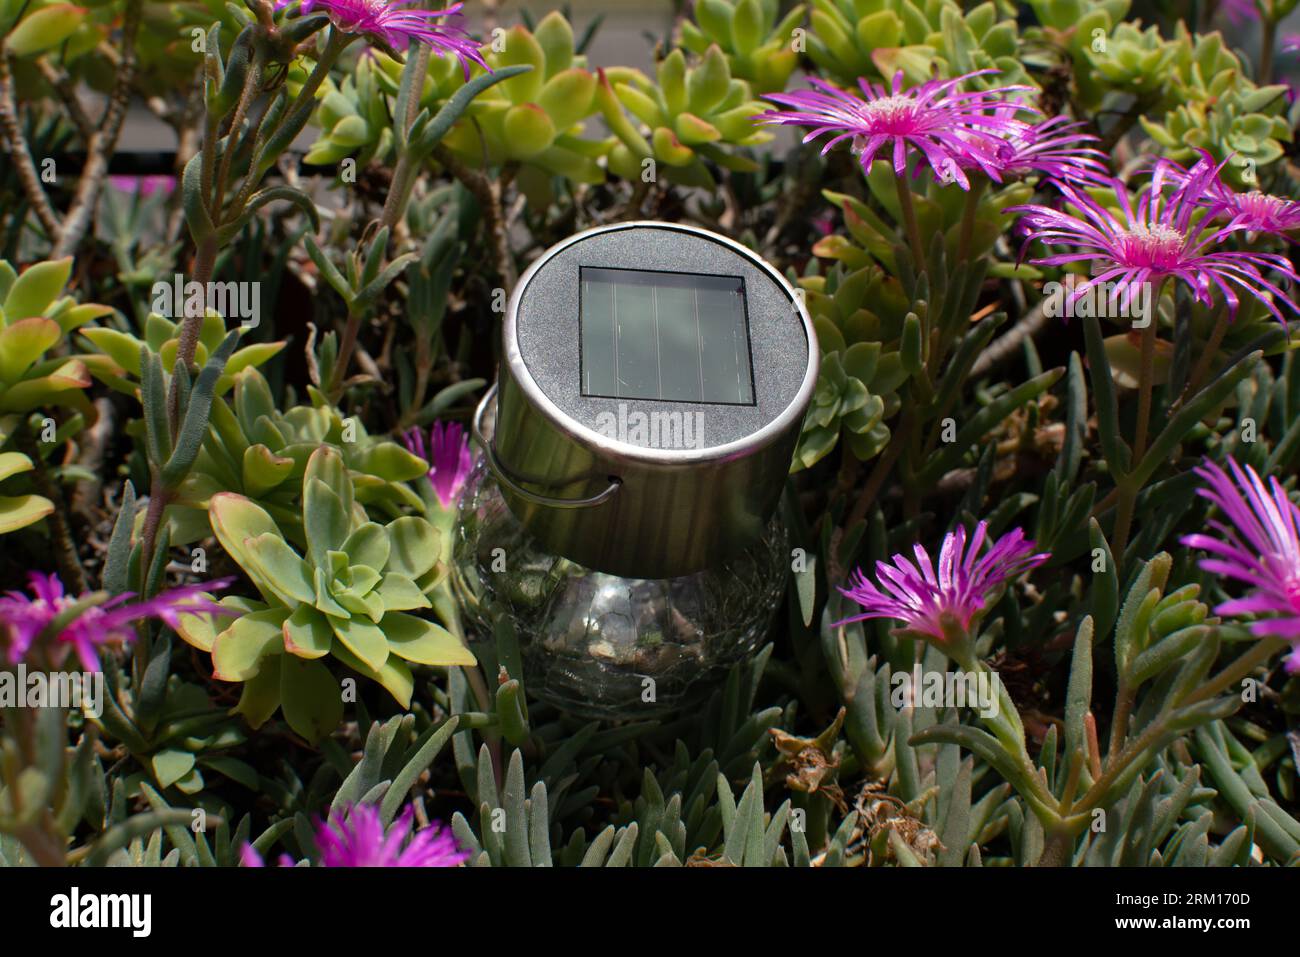 pannello solare nei fiori, idea concettuale sull'energia solare e il suo uso sempre più diffuso, strumento che combina energia pulita e libera con la tecnologia. Foto Stock